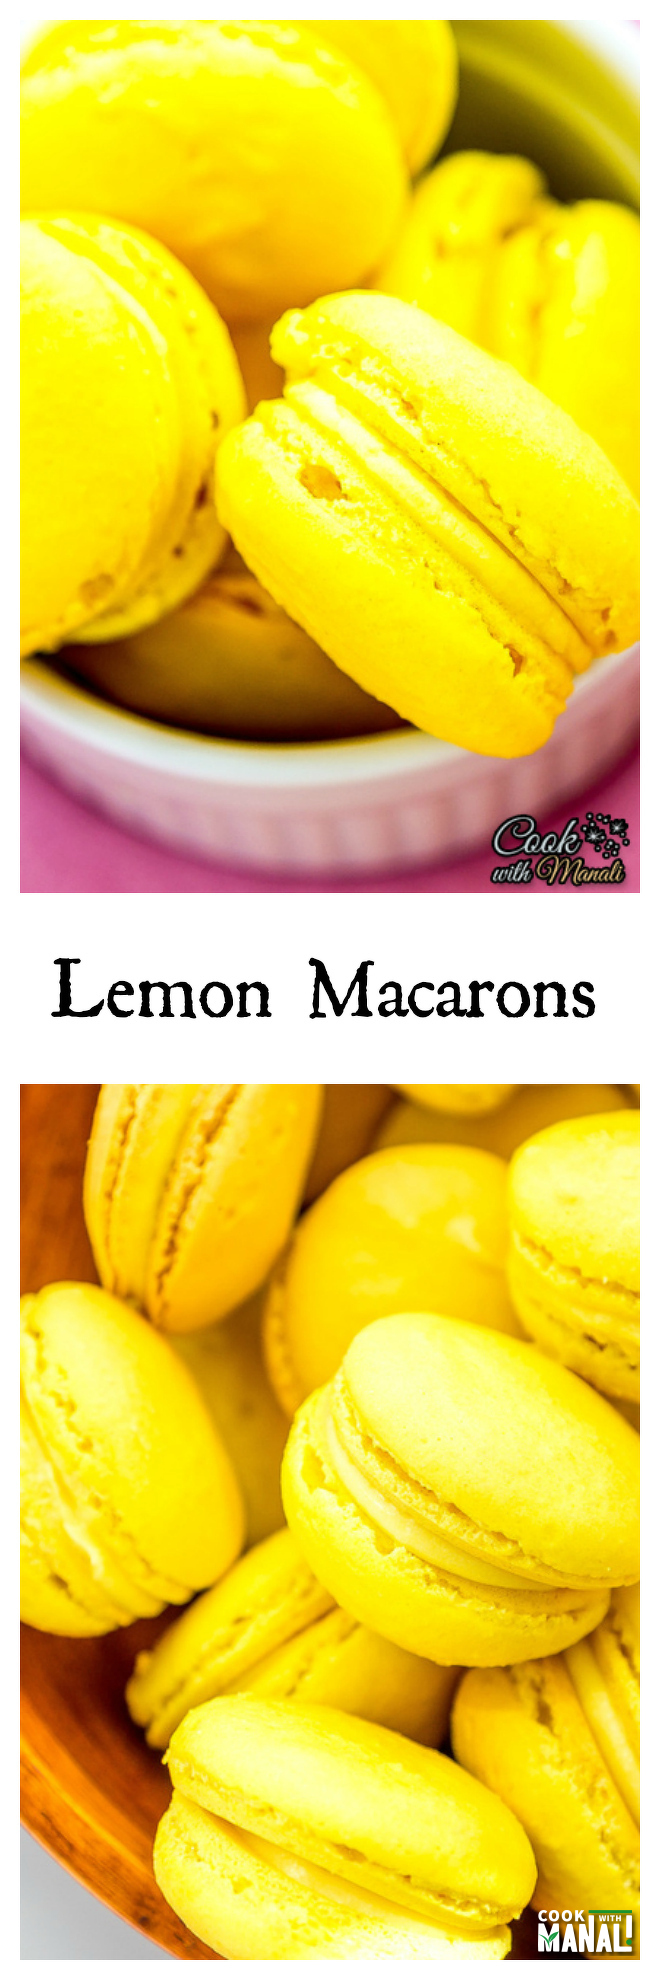 Lemon-Macarons-Recipe-Collage